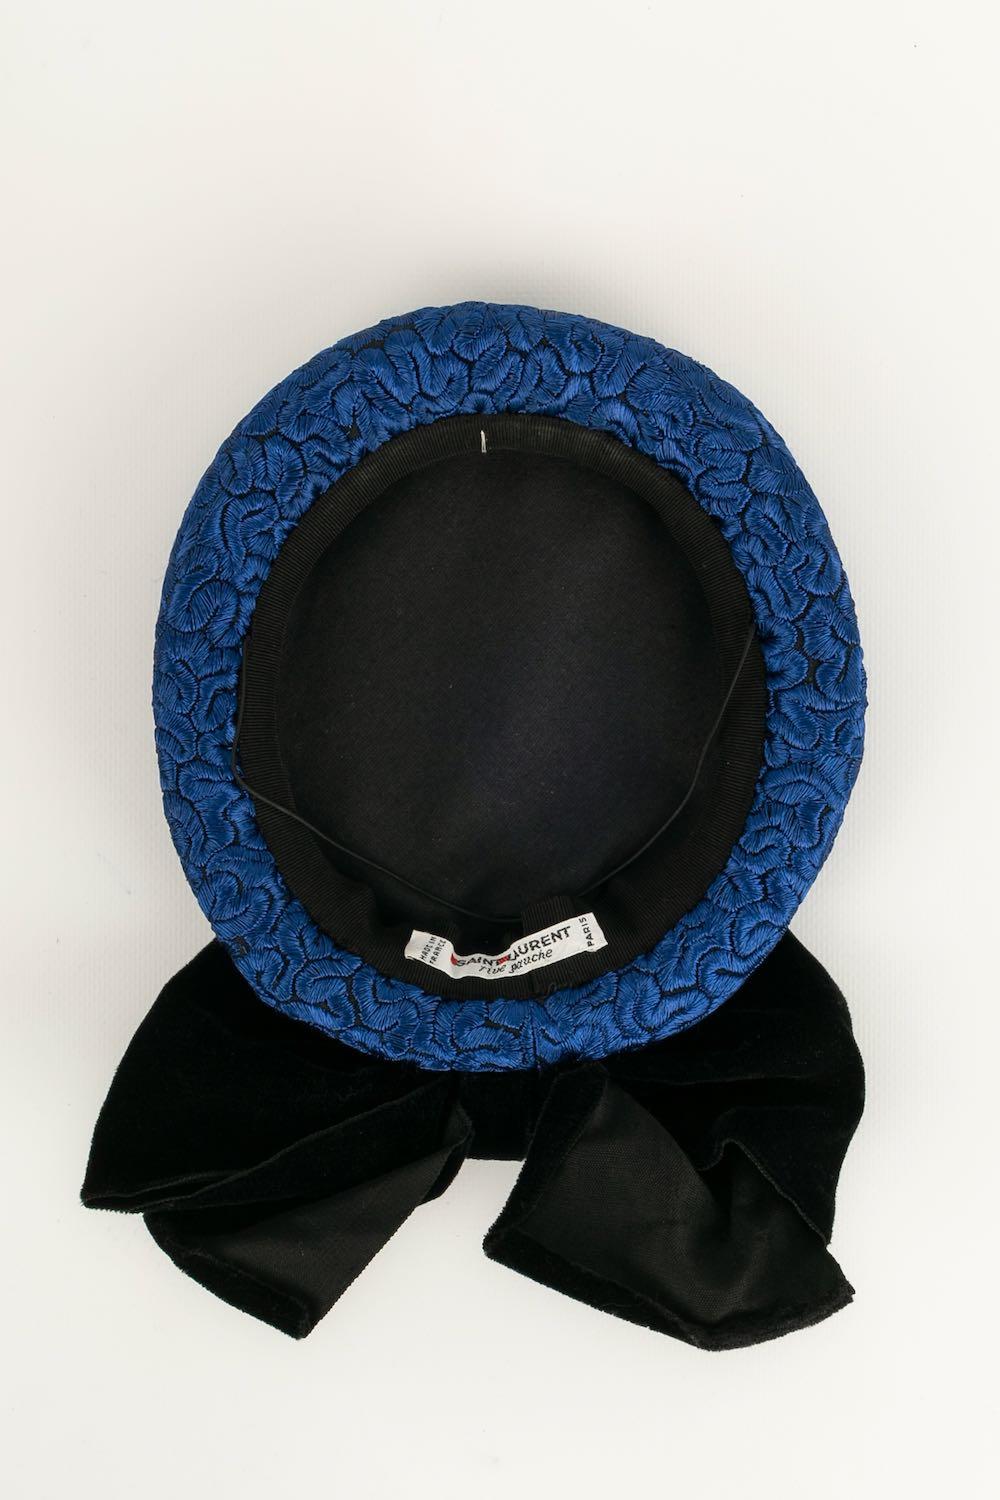 Yves Saint Laurent Black and Blue Hat/Bibi In Excellent Condition For Sale In SAINT-OUEN-SUR-SEINE, FR